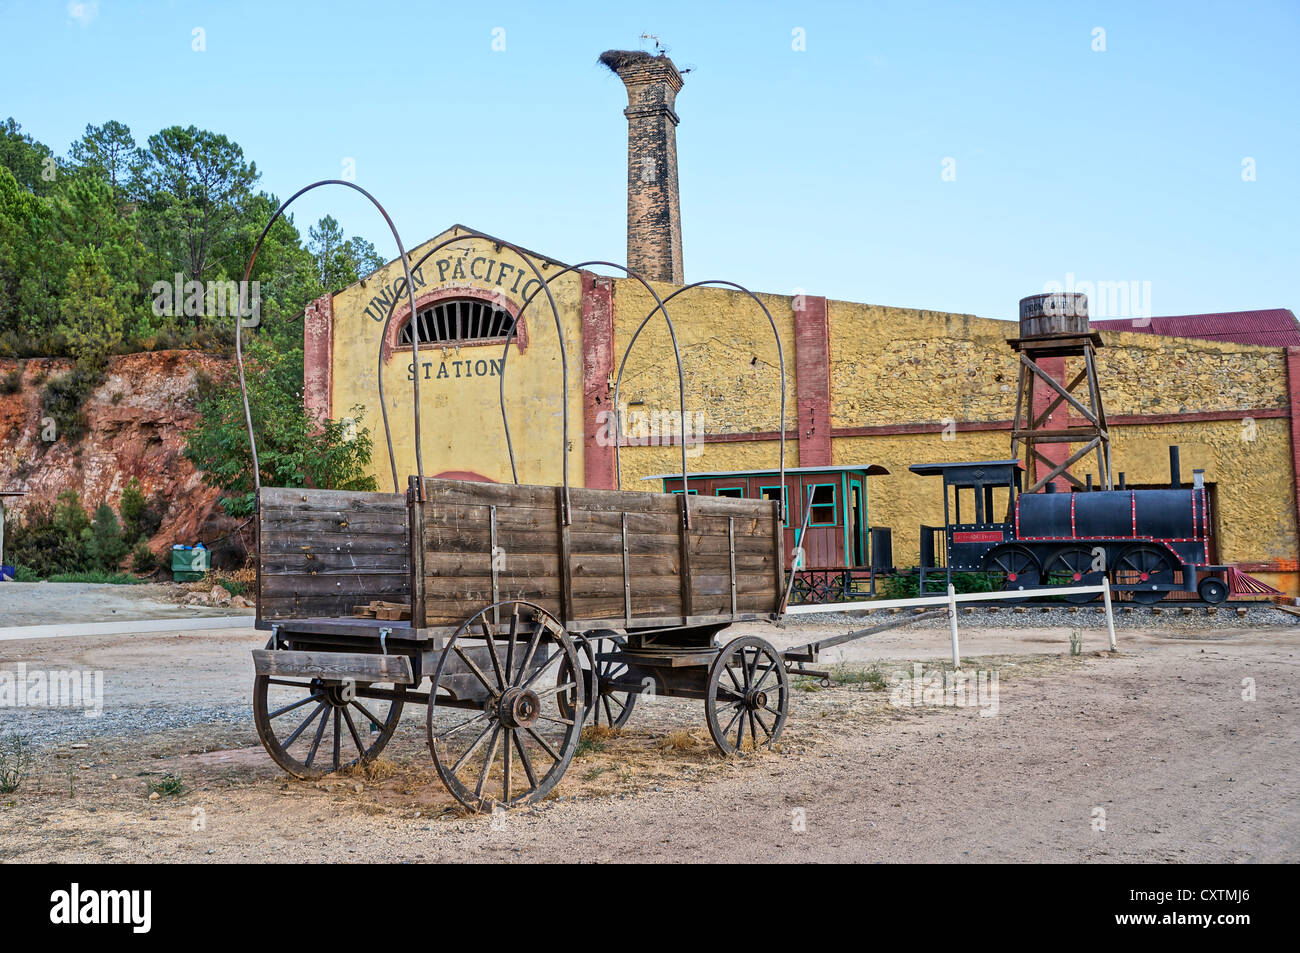 Ville de l'Ouest. Union Pacific gare, vue wagon depuis les jours de l'ouest sauvage, à la Reserva Sevilla, Safari park Banque D'Images